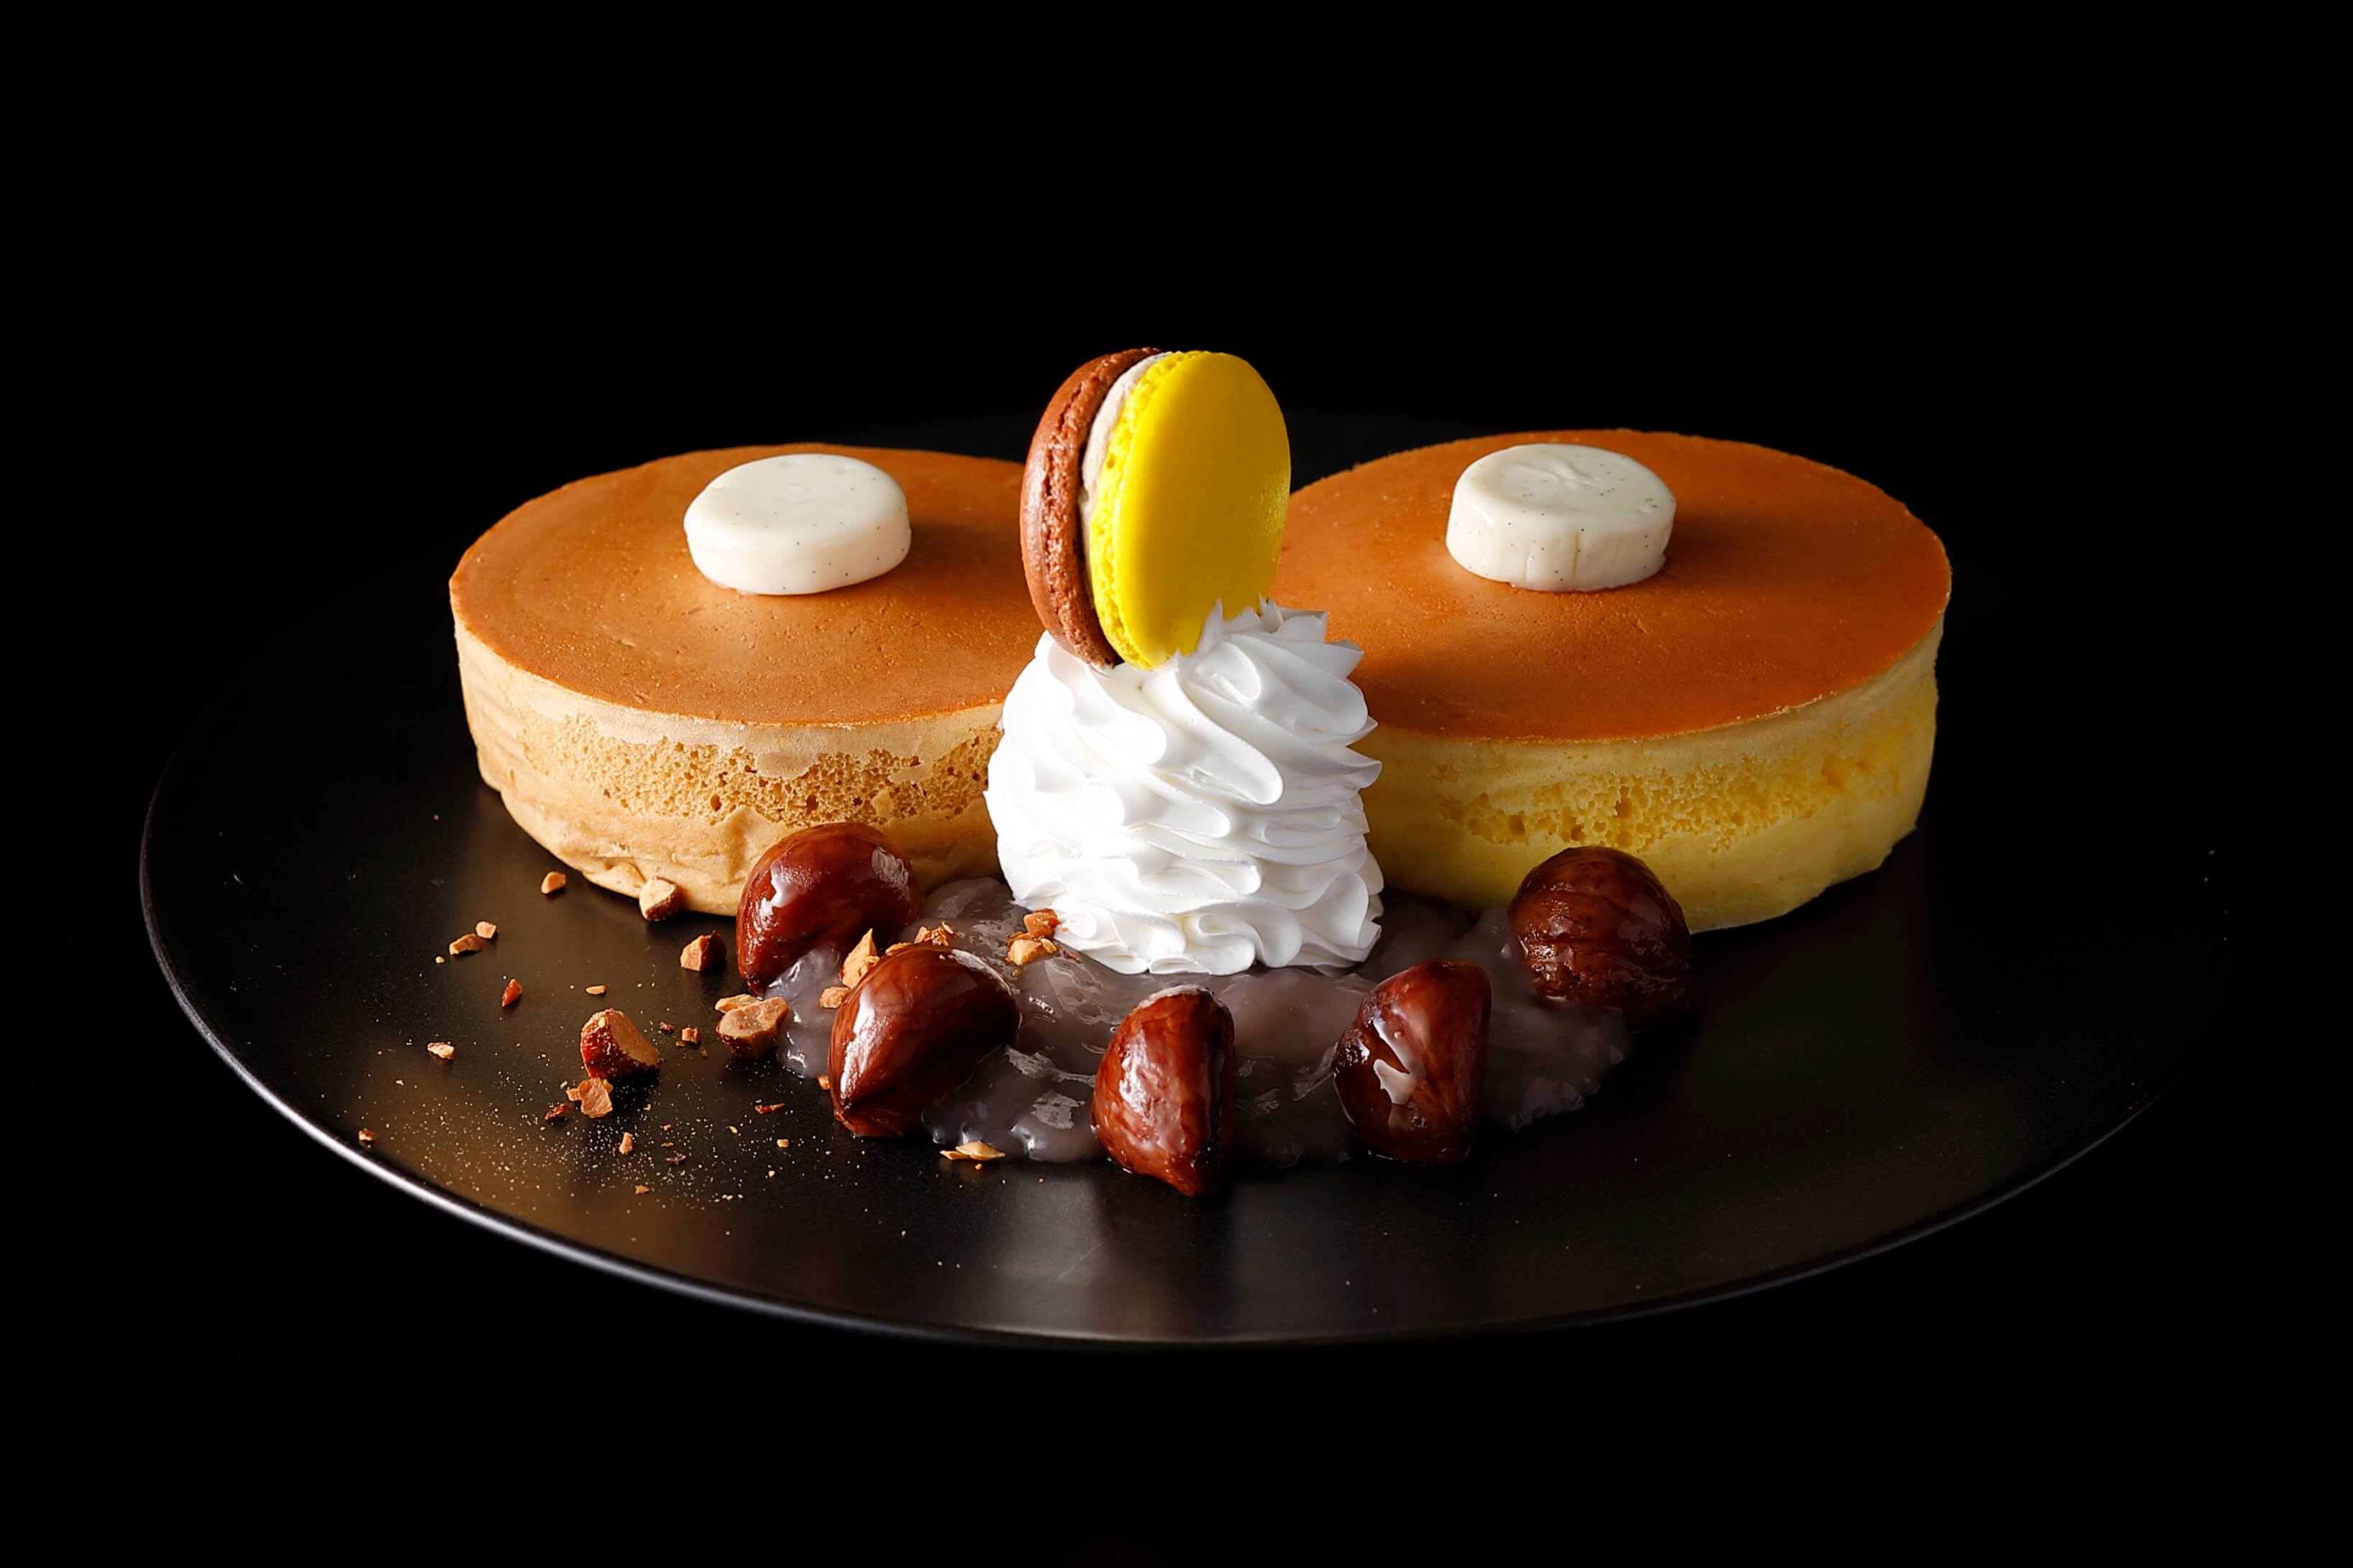 日本中が注目する ふわっふわスイーツ 誕生10周年を迎える話題のパンケーキがさらに進化して登場 ホテルニューオータニ大阪